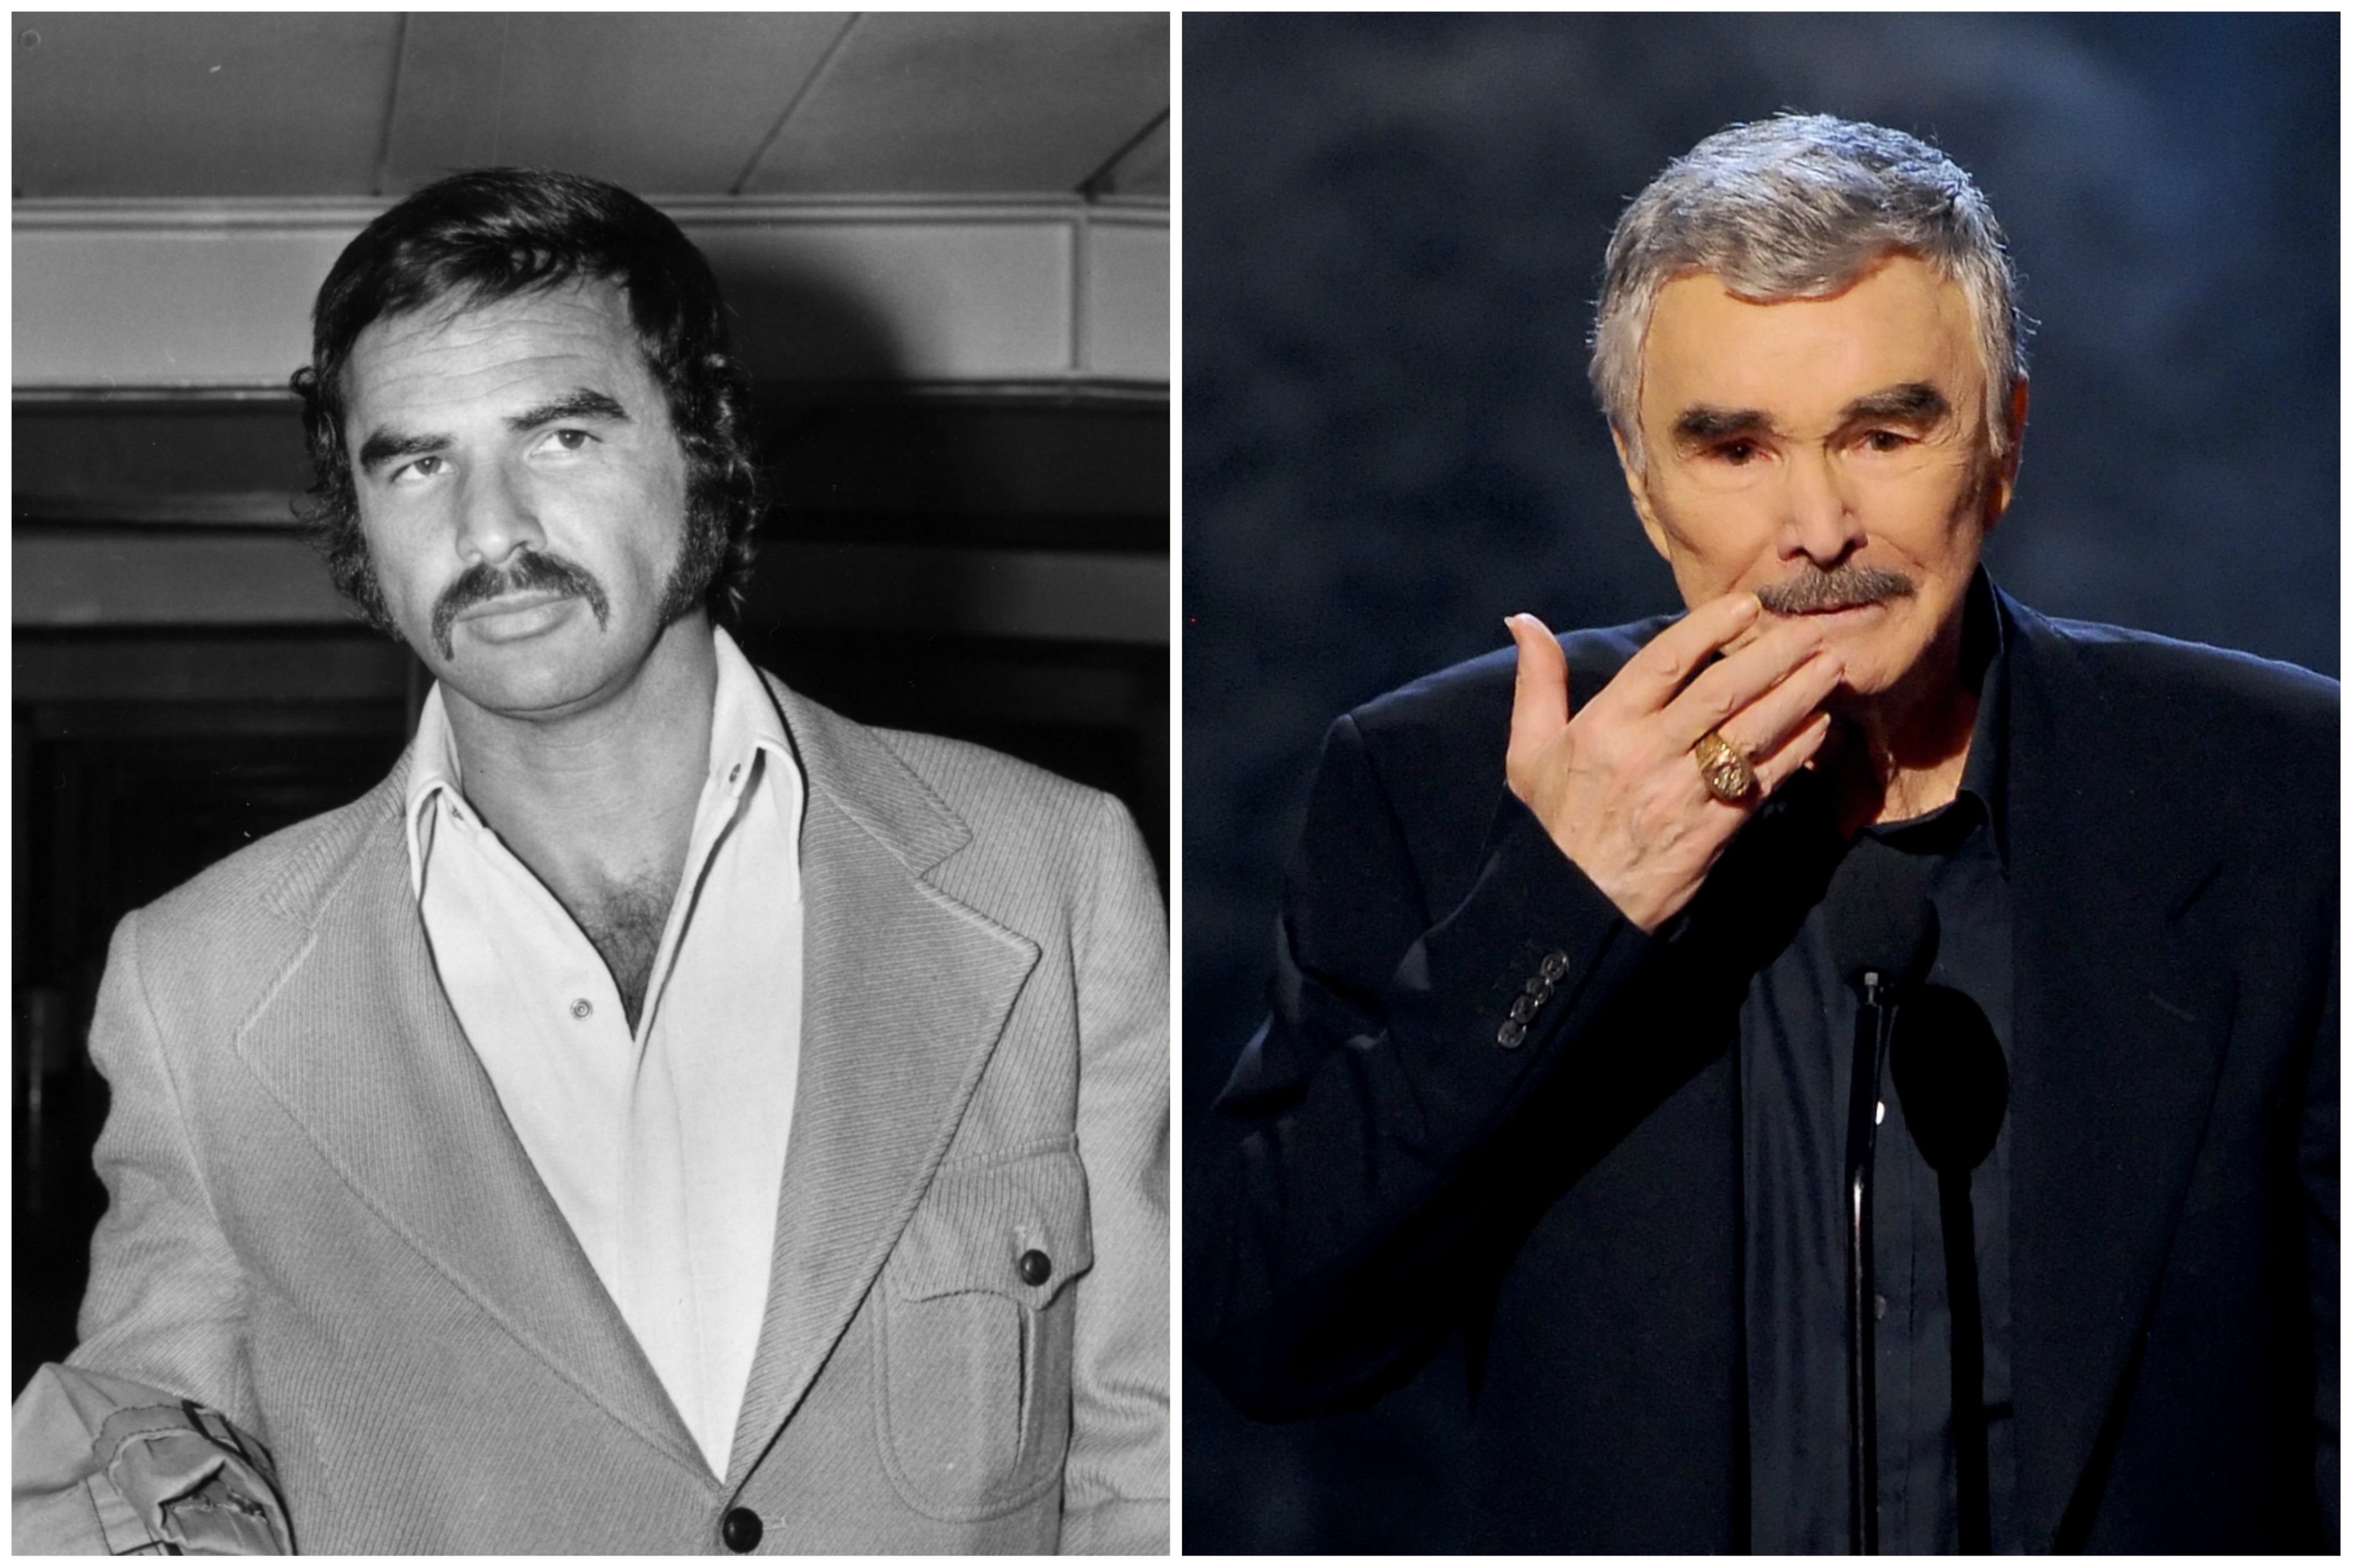 O ator Burt Reynolds aos 38 anos (à esq.) e aos 77. Ele fez 78 em fevereiro de 2014. (Foto: Getty Images)